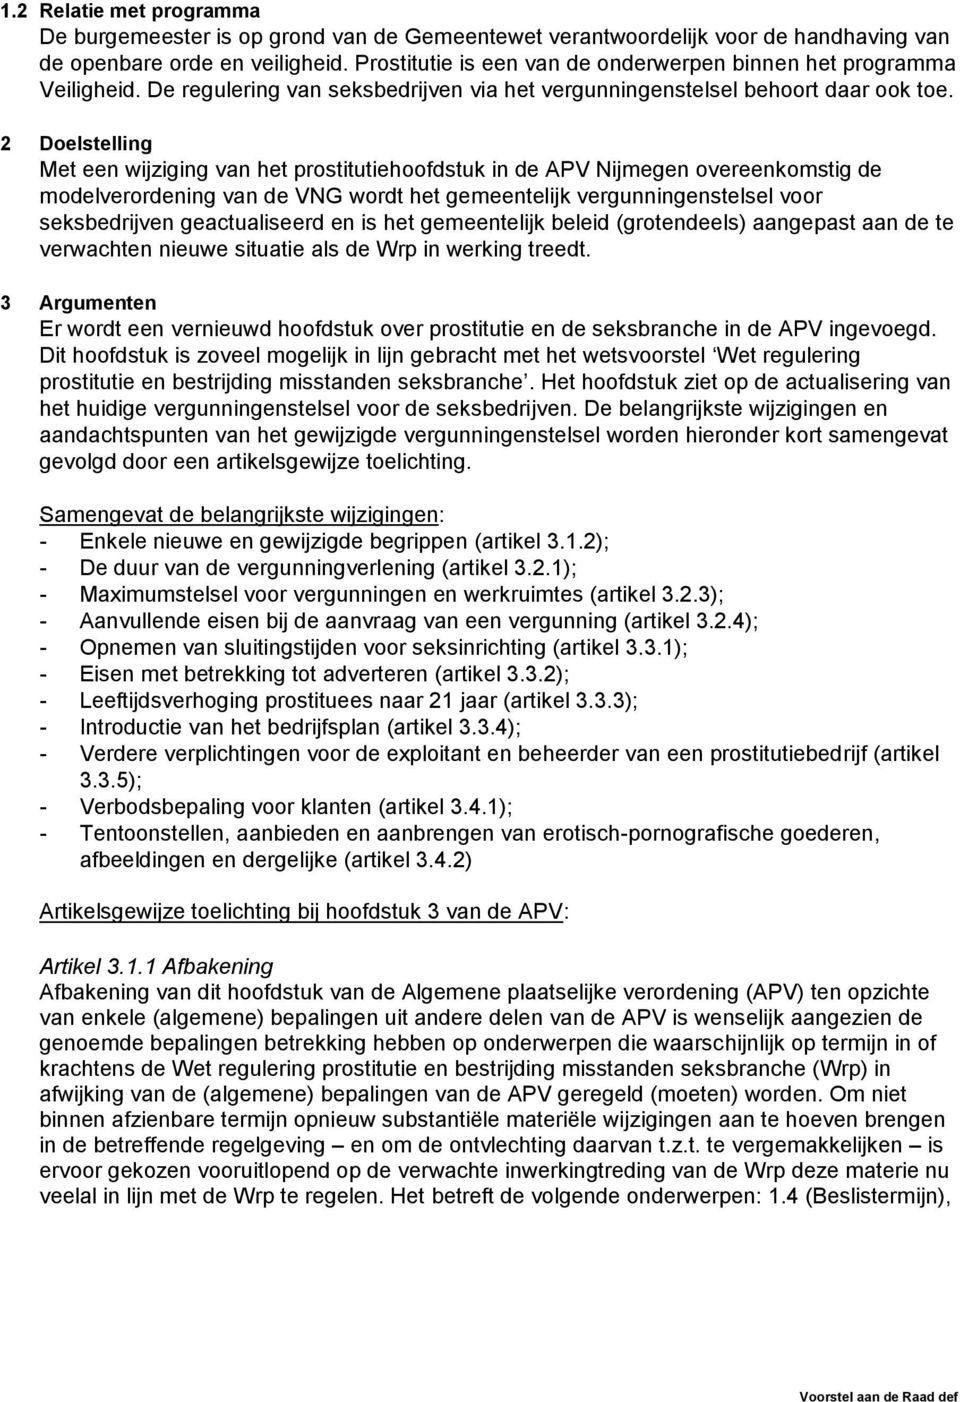 2 Doelstelling Met een wijziging van het prostitutiehoofdstuk in de APV Nijmegen overeenkomstig de modelverordening van de VNG wordt het gemeentelijk vergunningenstelsel voor seksbedrijven